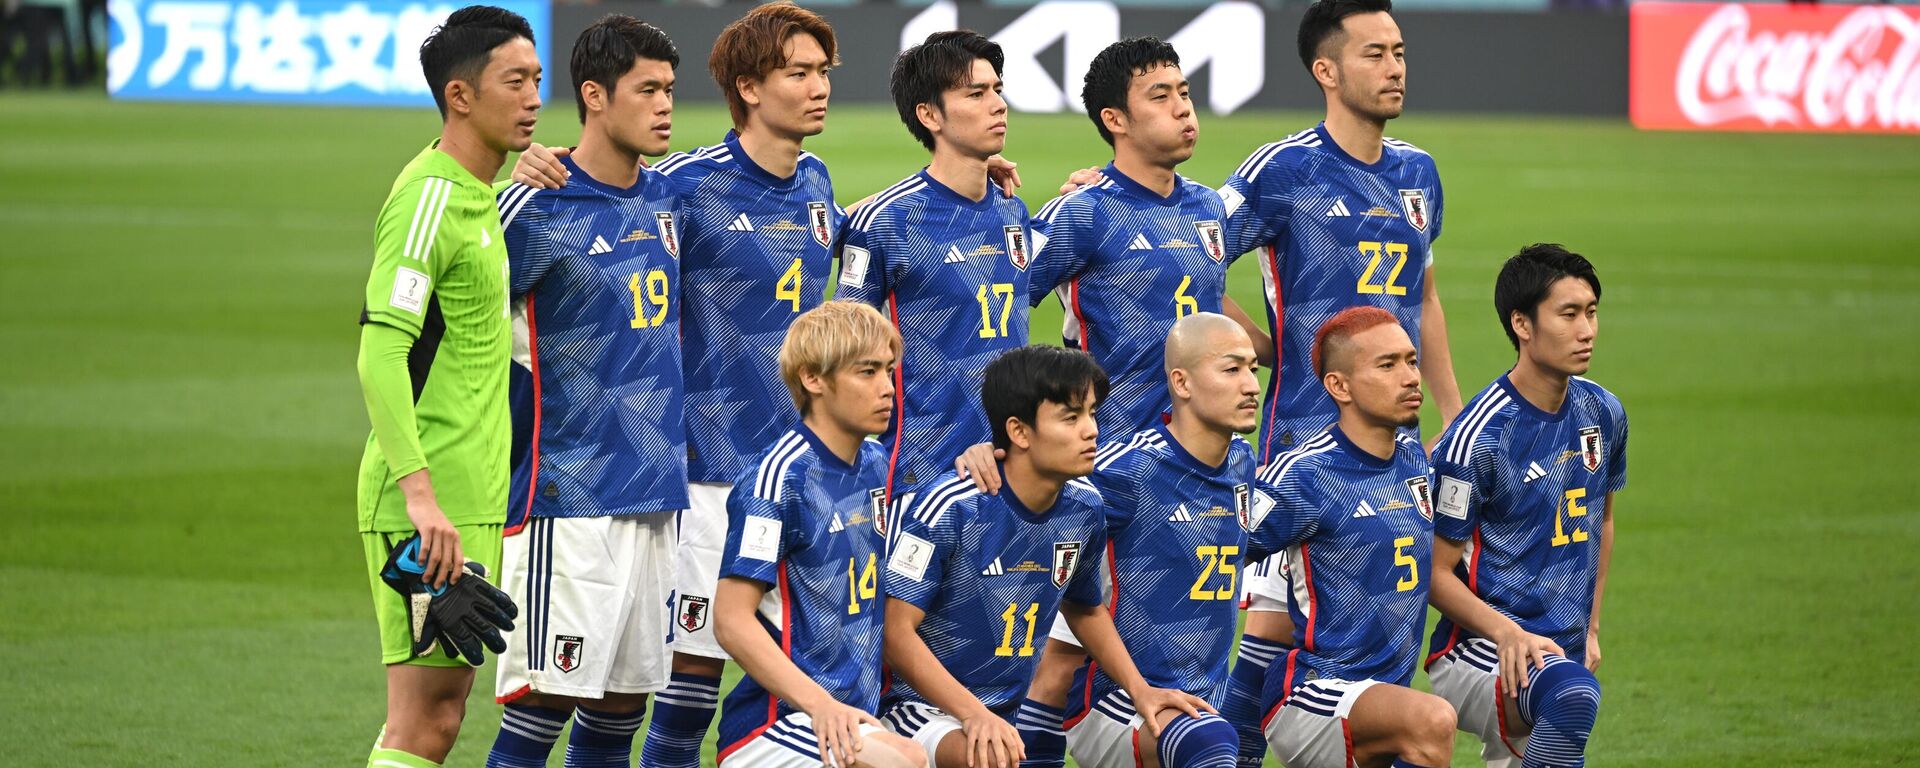 Các cầu thủ của đội tuyển quốc gia Nhật Bản trước khi bắt đầu trận đấu vòng bảng World Cup giữa Đức và Nhật Bản - Sputnik Việt Nam, 1920, 02.12.2022